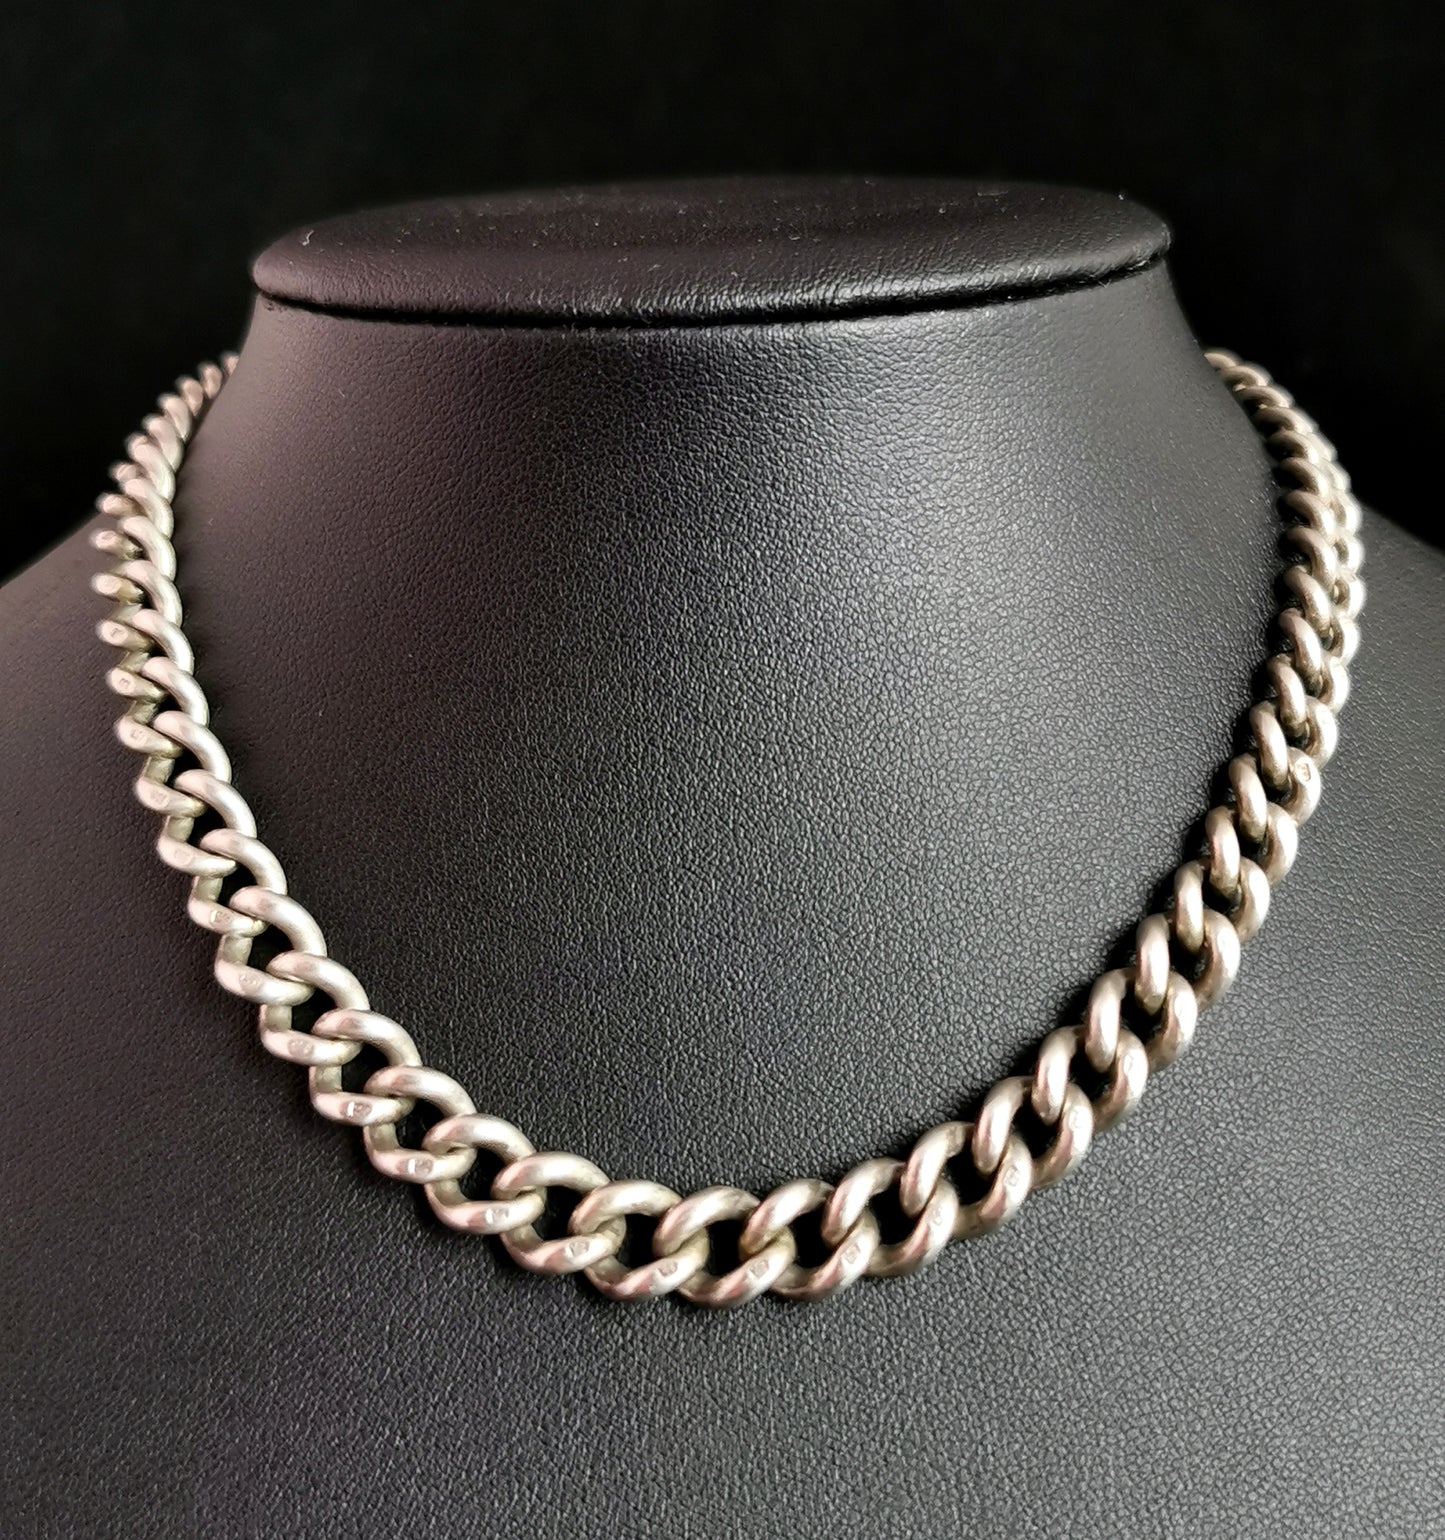 Antique silver albert chain, watch chain, Victorian